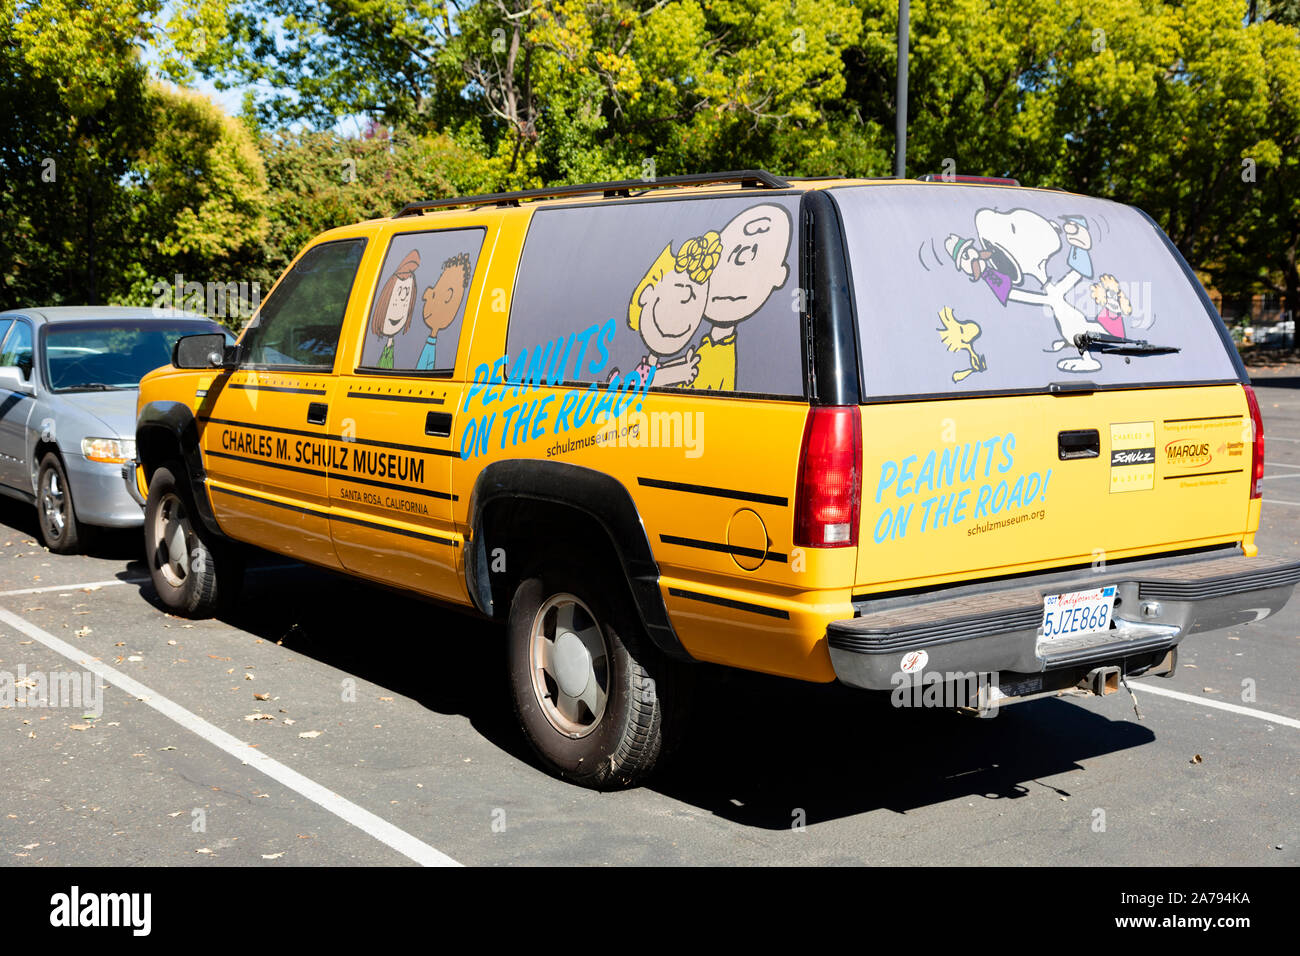 "Peanuts auf der Straße" Auto, Charles M Schulz Snoopy Charlie Brown Museum, Eislaufbahn, Santa Rosa, Kalifornien Stockfoto